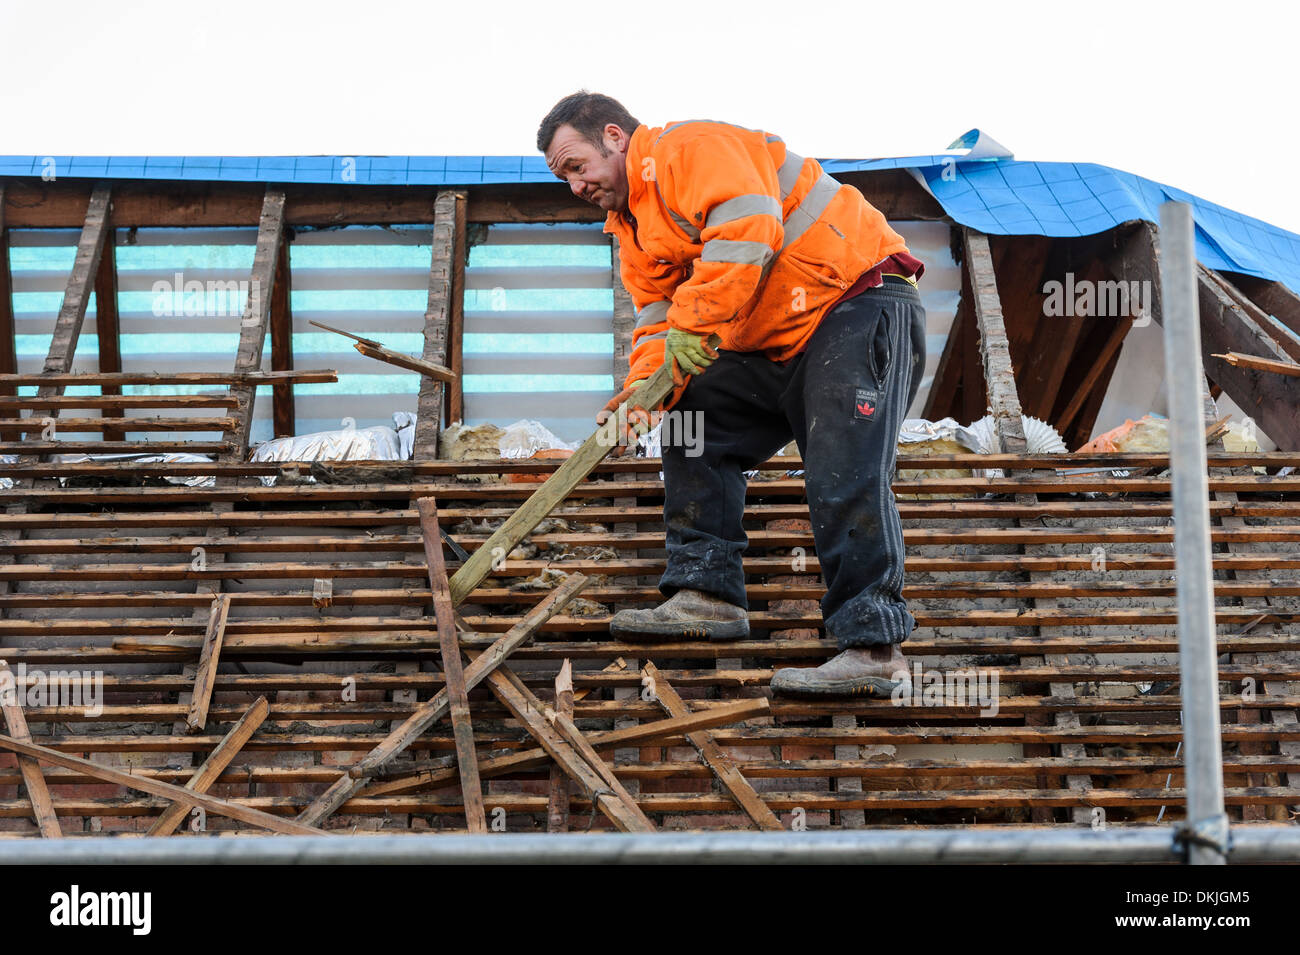 Un couvreur travaille sur un toit de bardeaux de cèdre, de remplacement en équilibre sur les pannes. Rénovation maison concept maison d'amélioration. Banque D'Images